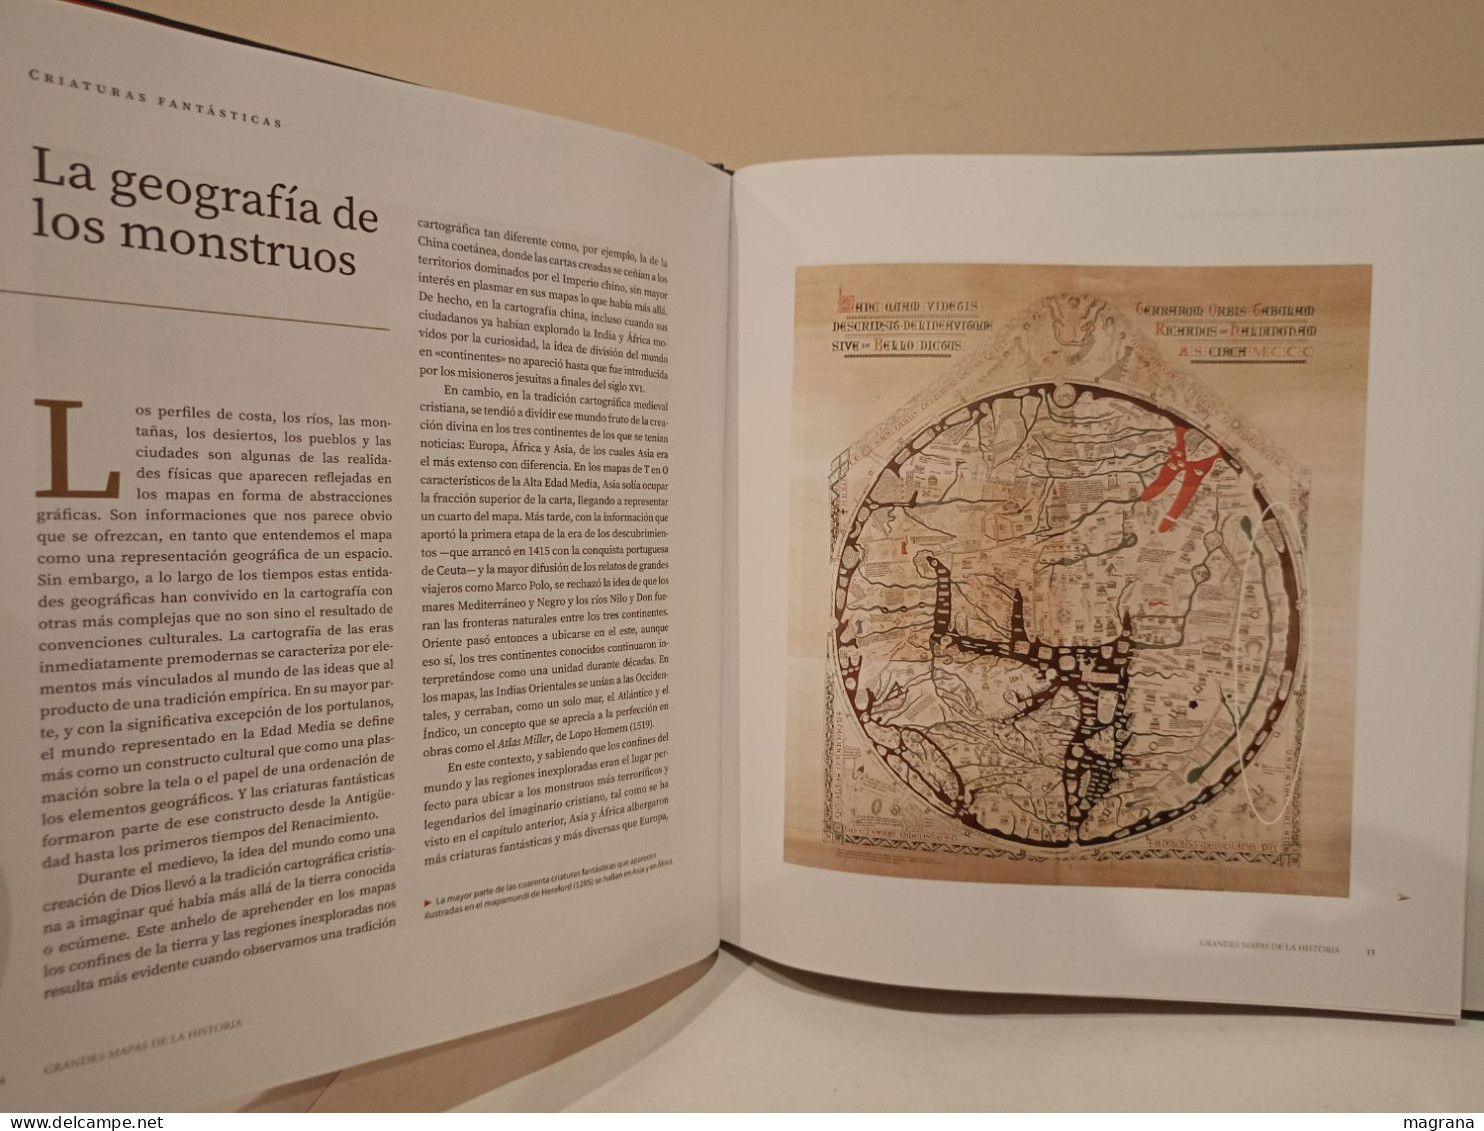 Criaturas Fantásticas. Carta Marina, De Olaus Magnus. Grandes Mapas De La Historia. 2019. 63 Pp. - Kultur